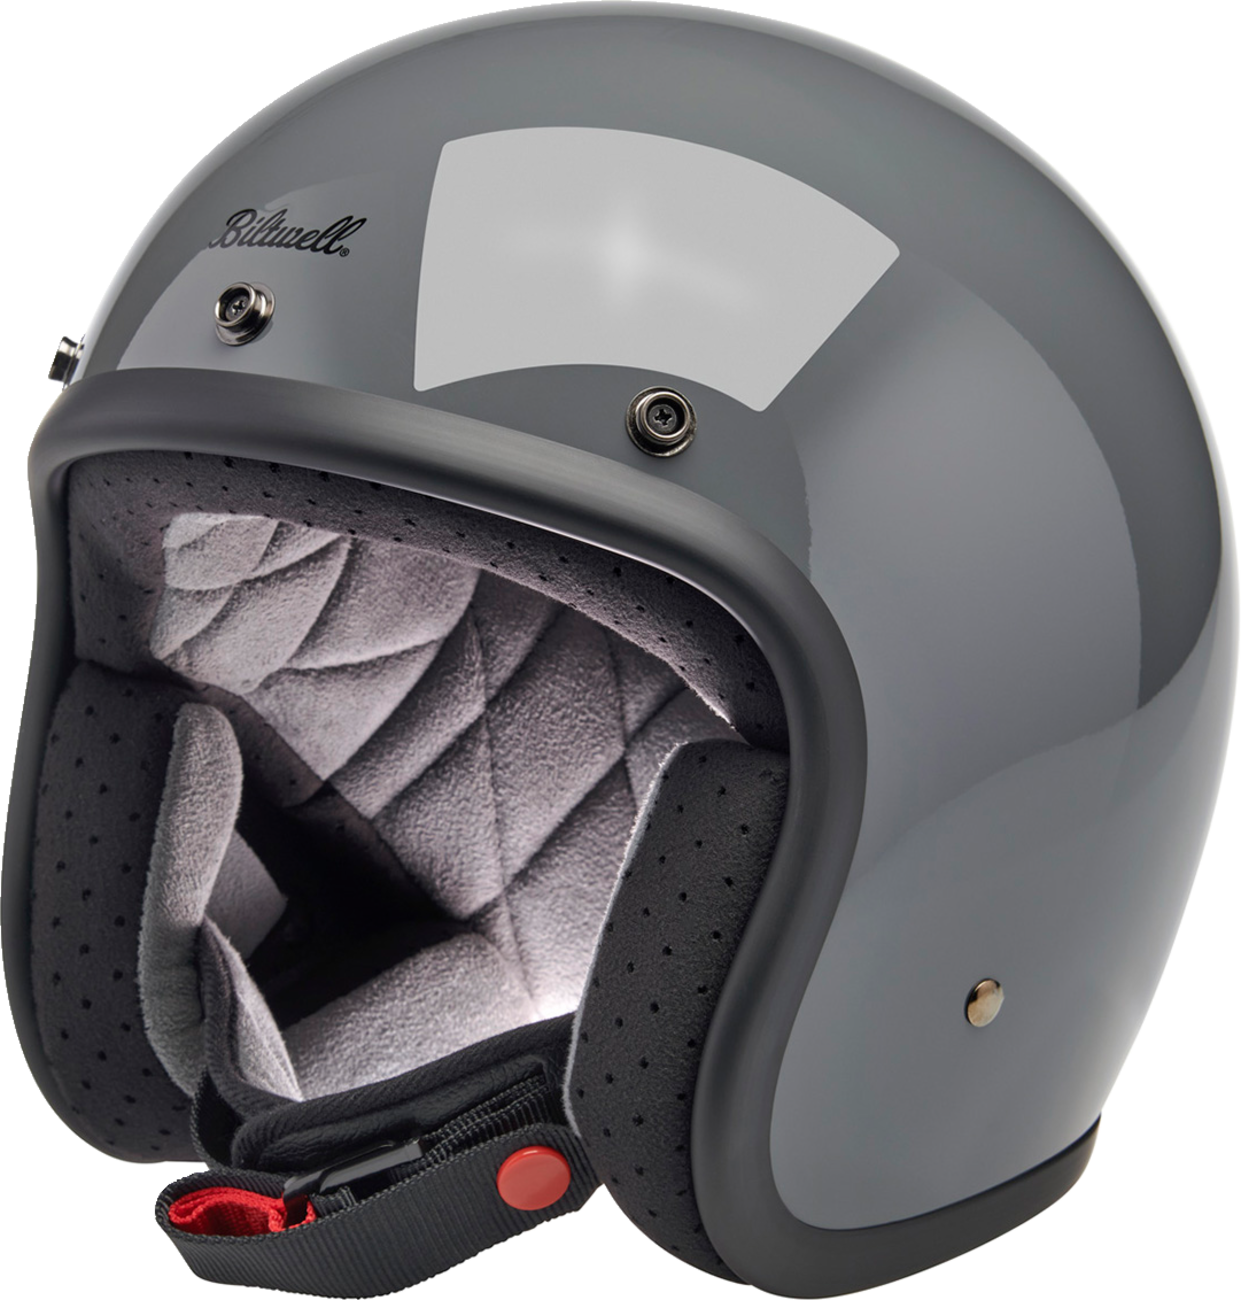 BILTWELL Bonanza Helmet - Gloss Storm Gray - Small 1001-165-202